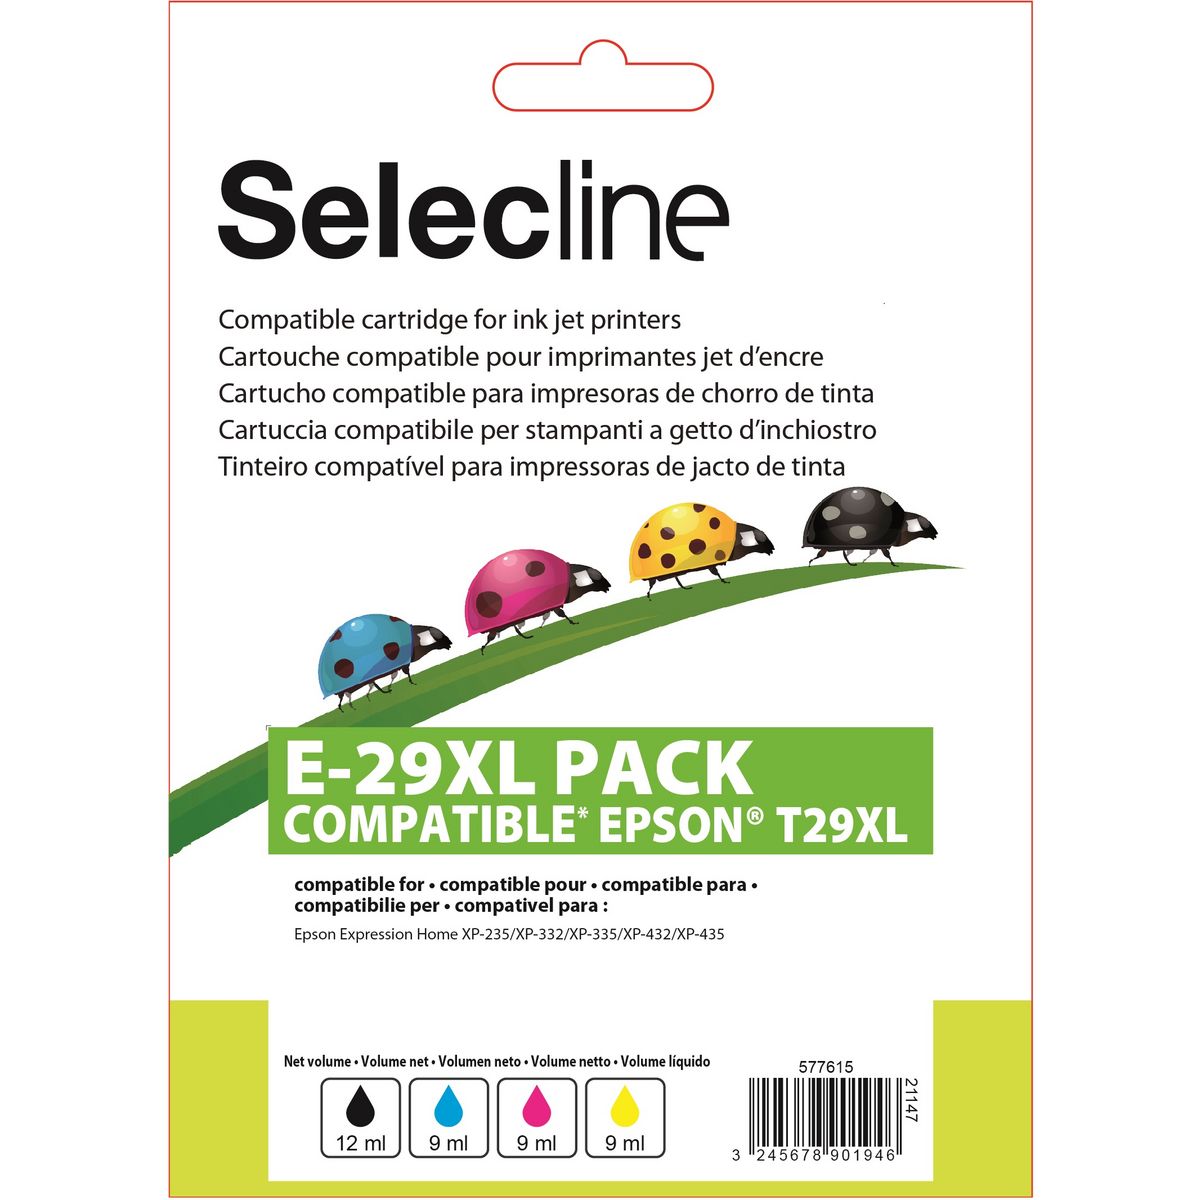 SELECLINE Cartouche 4 Couleurs E-29 XL PACK